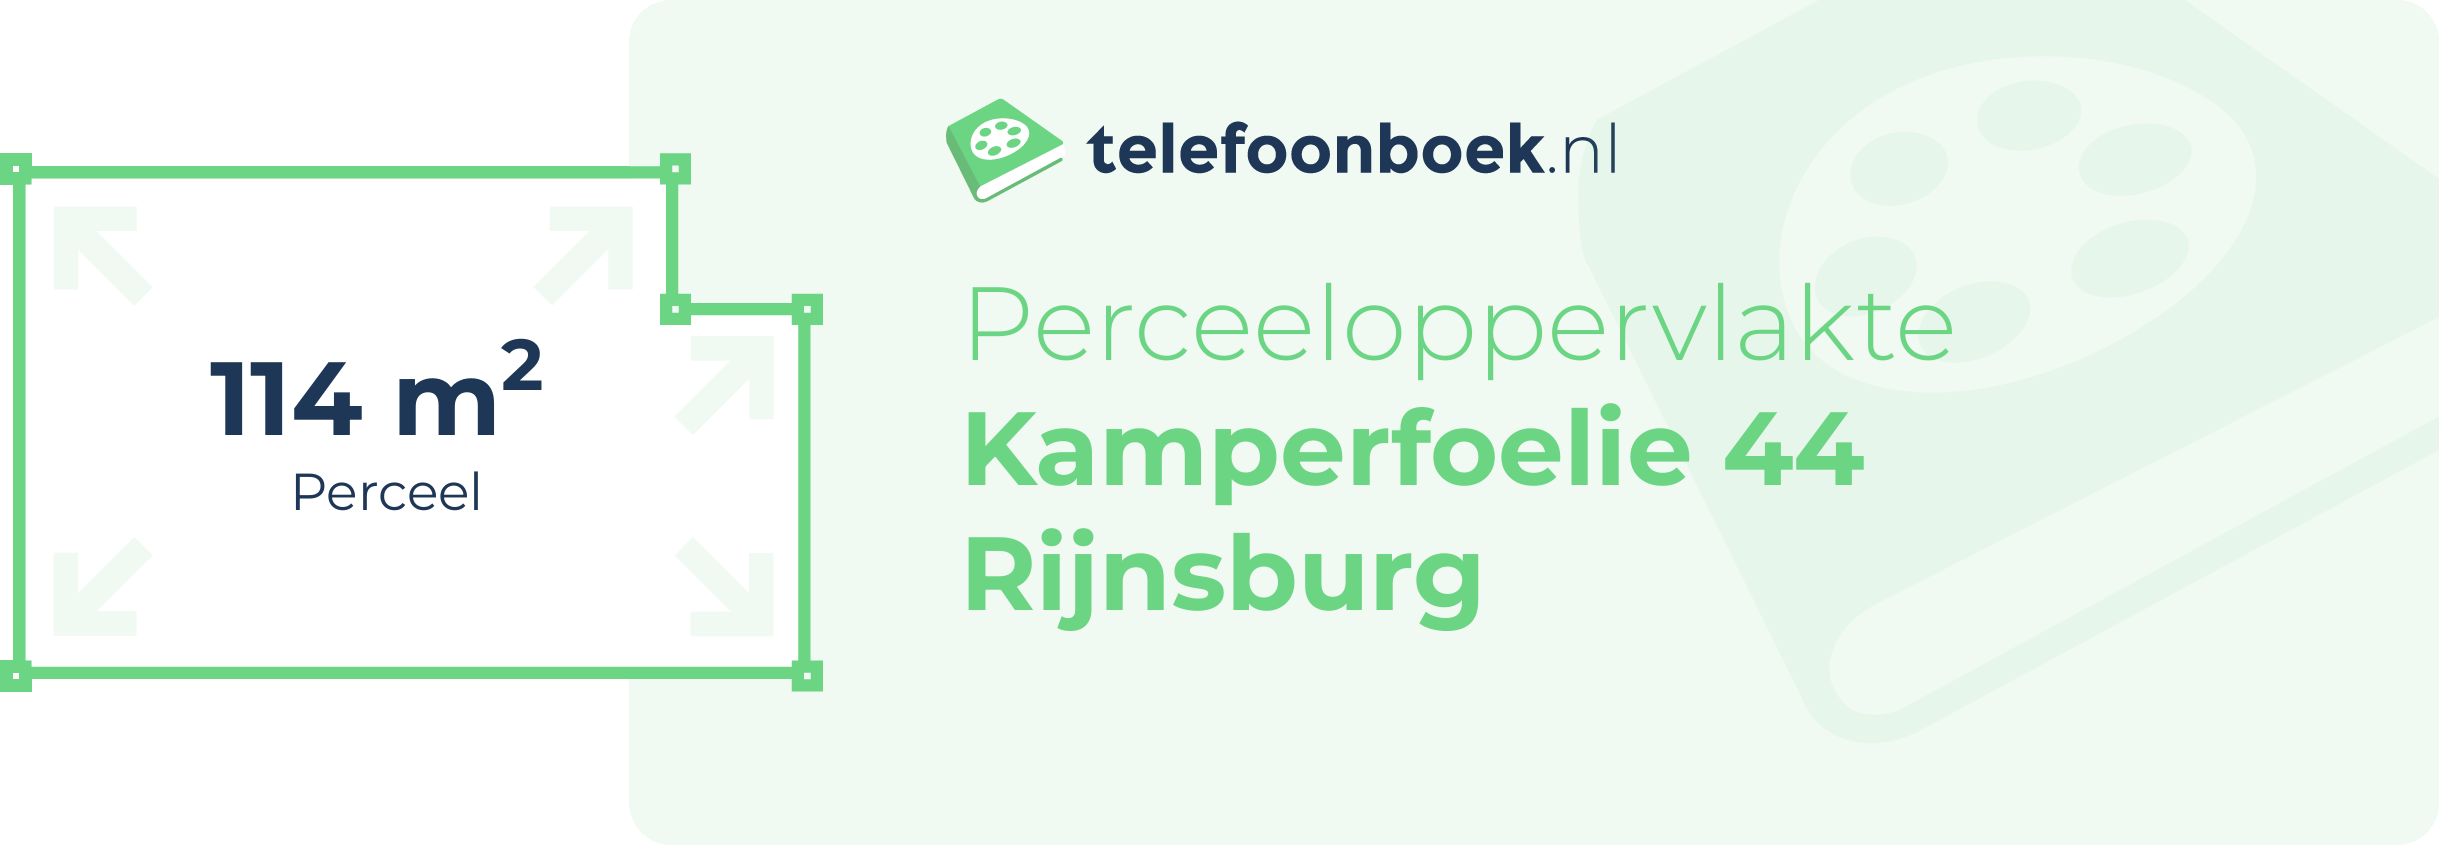 Perceeloppervlakte Kamperfoelie 44 Rijnsburg